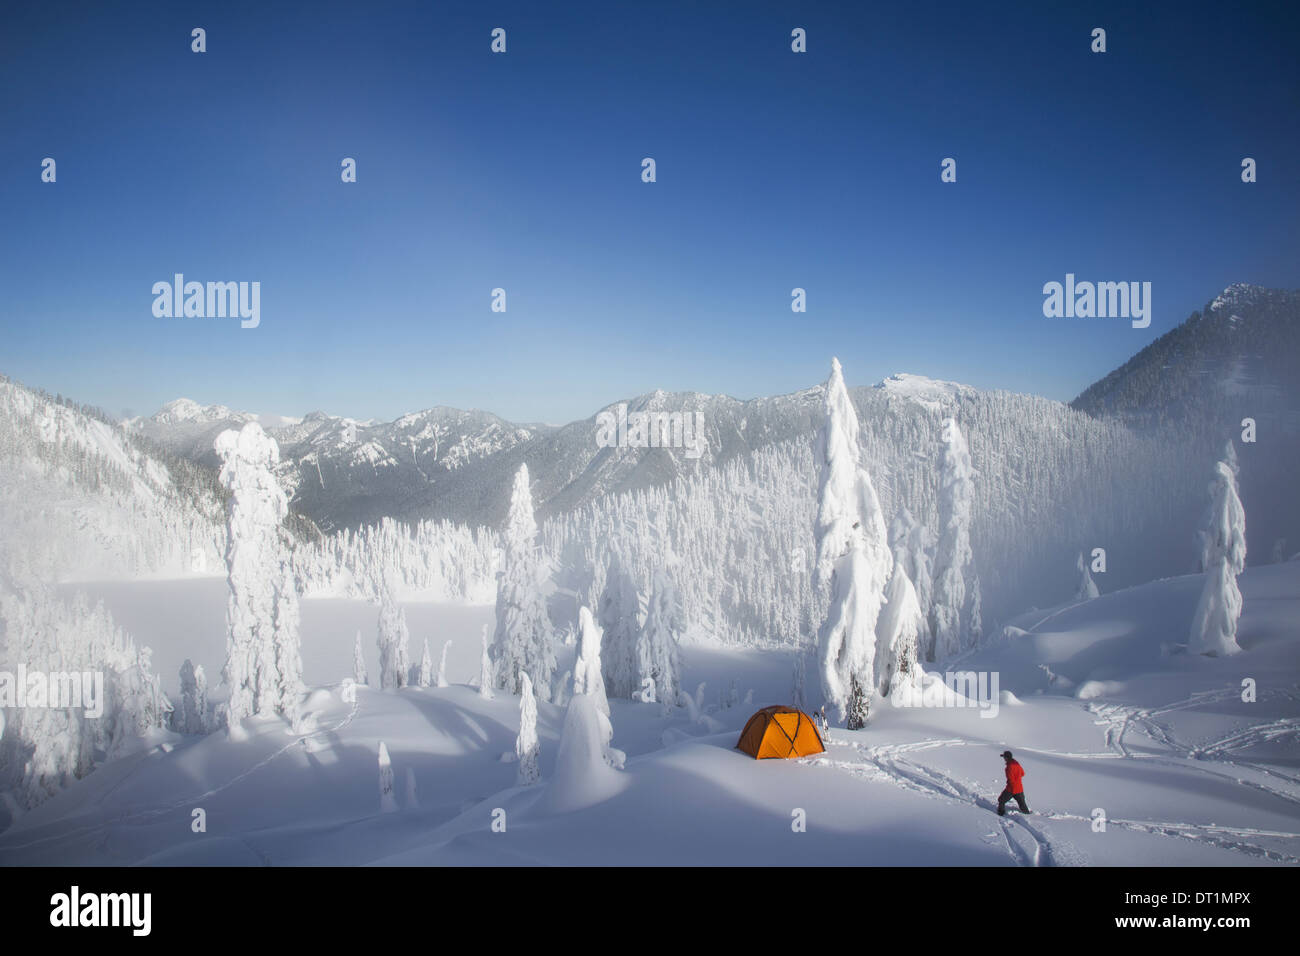 Michael Hanson passeggiate attraverso le profonde in polvere per il suo campeggio nella coperta di neve Cascade Mountains affacciato sul lago di neve Foto Stock